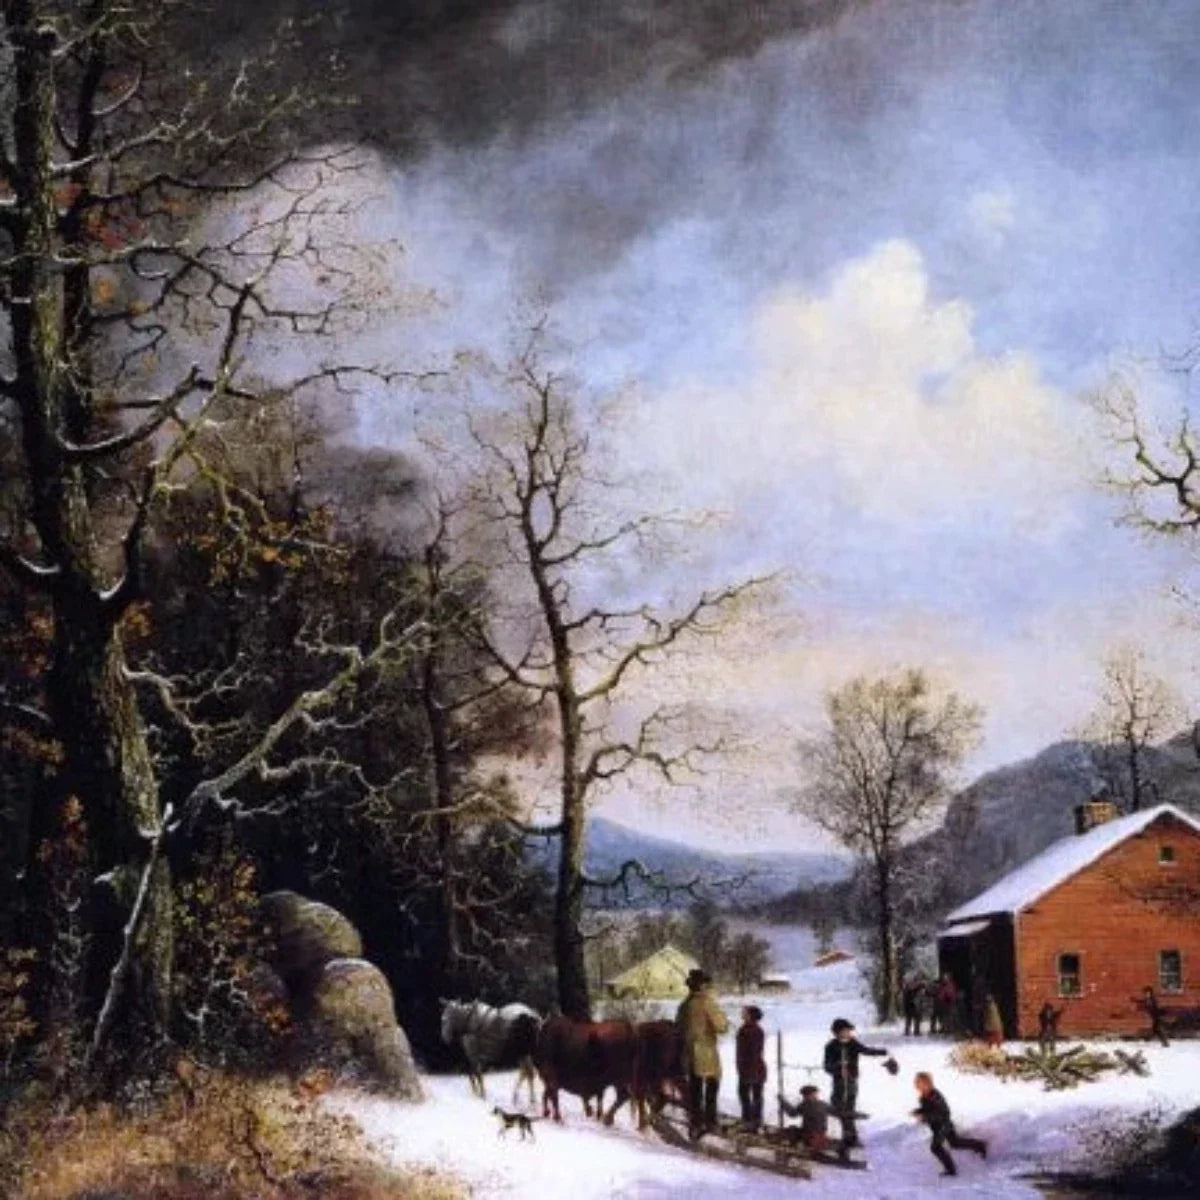 Winter Scene - Stampe d'Arte Vintage per Decorare il Soggiorno in Stile Invernale